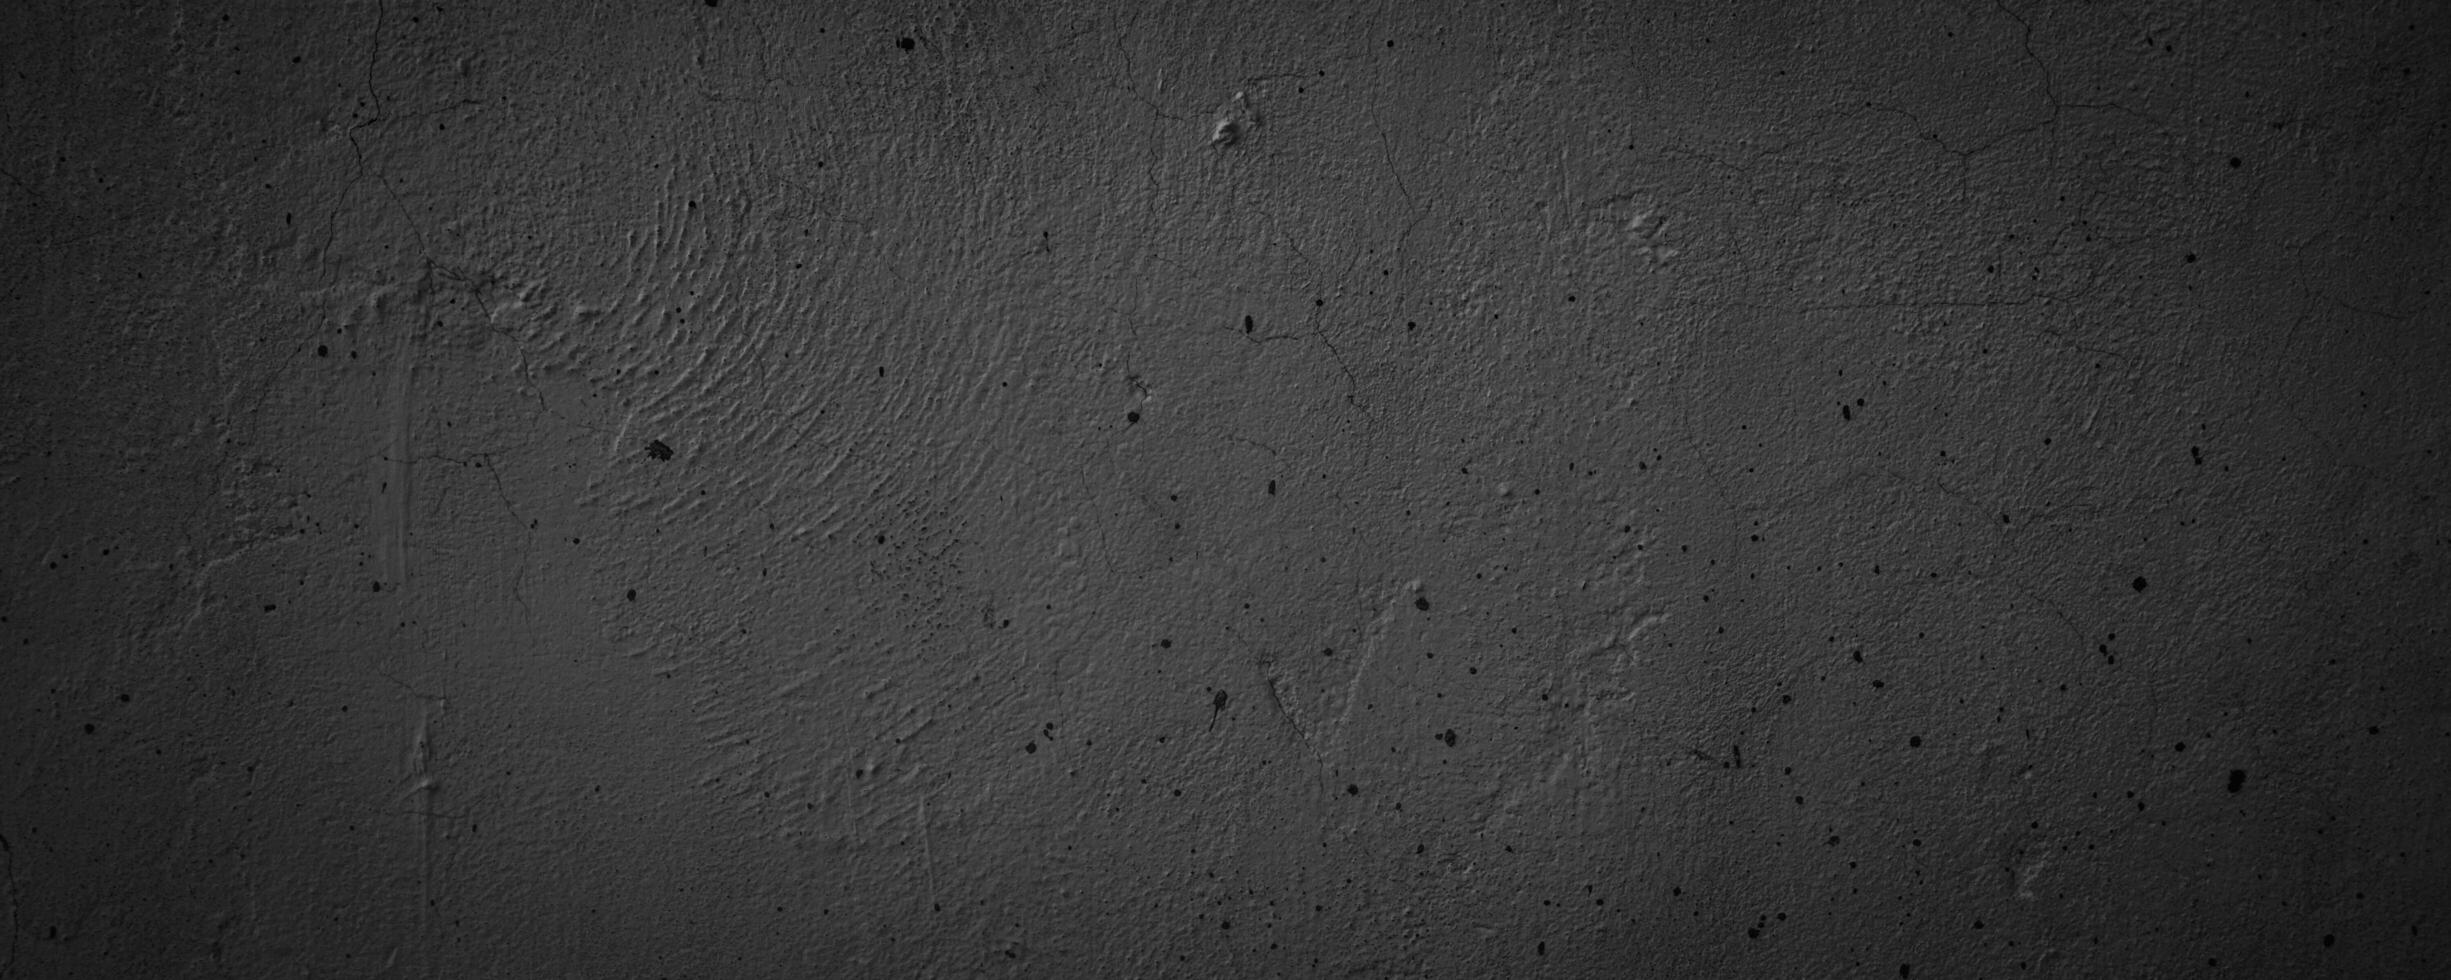 textura resumen negro sucio pared antecedentes foto